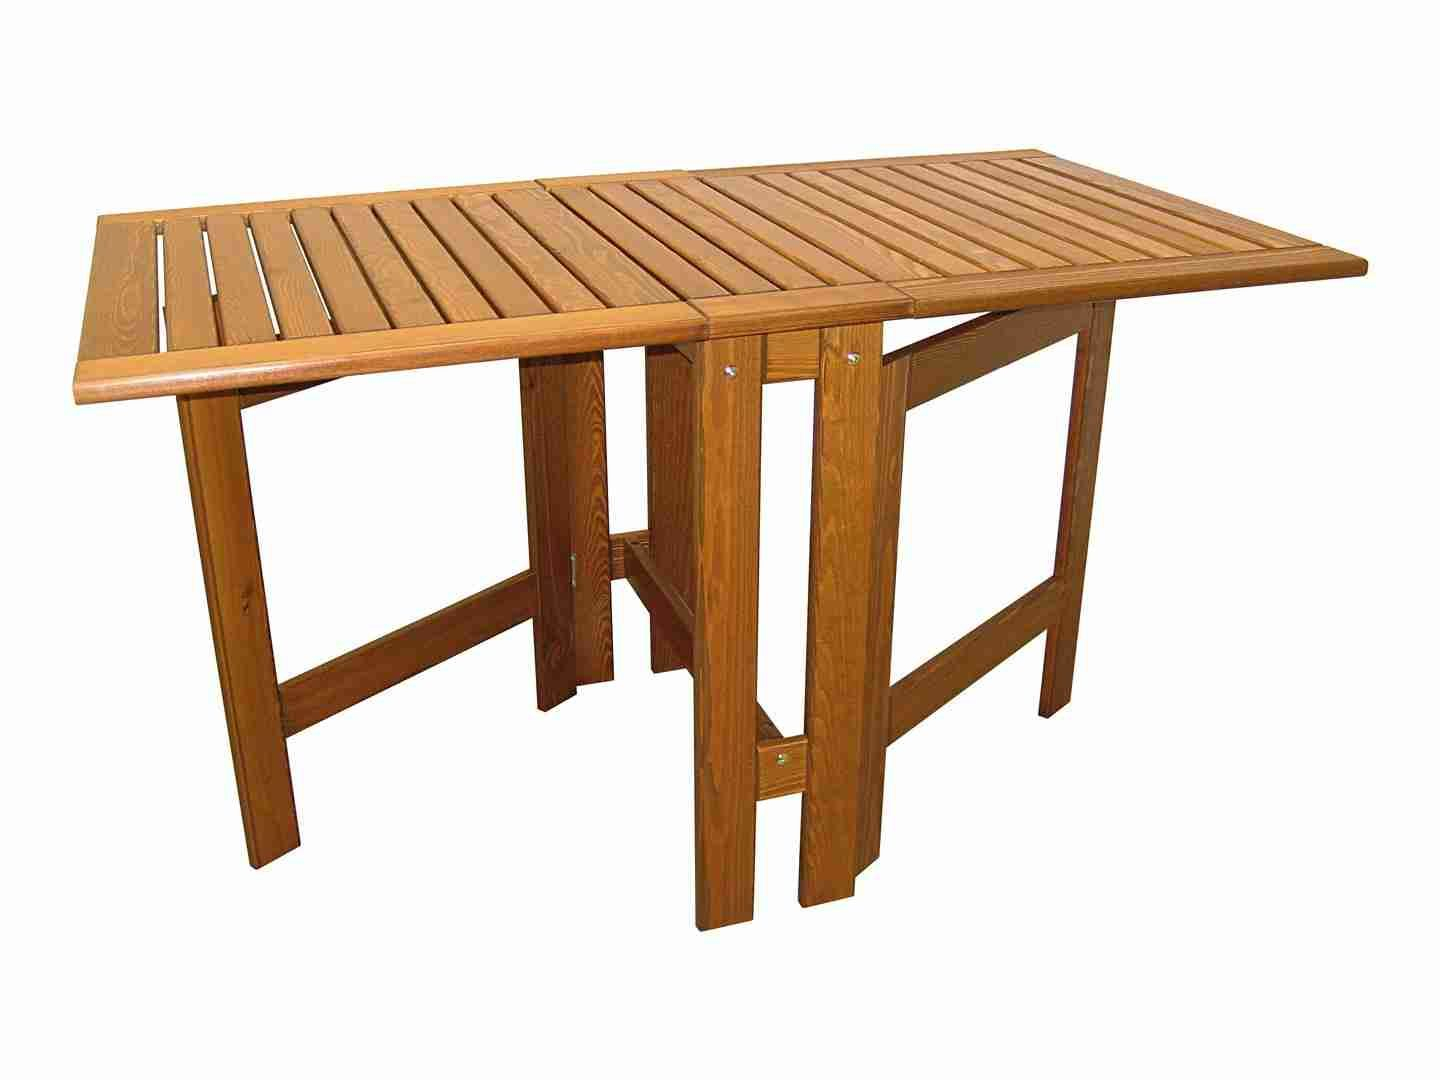 Table Pliante Castorama Élégant Table Pliante Rectangulaire ... concernant Table De Jardin Pliante Castorama